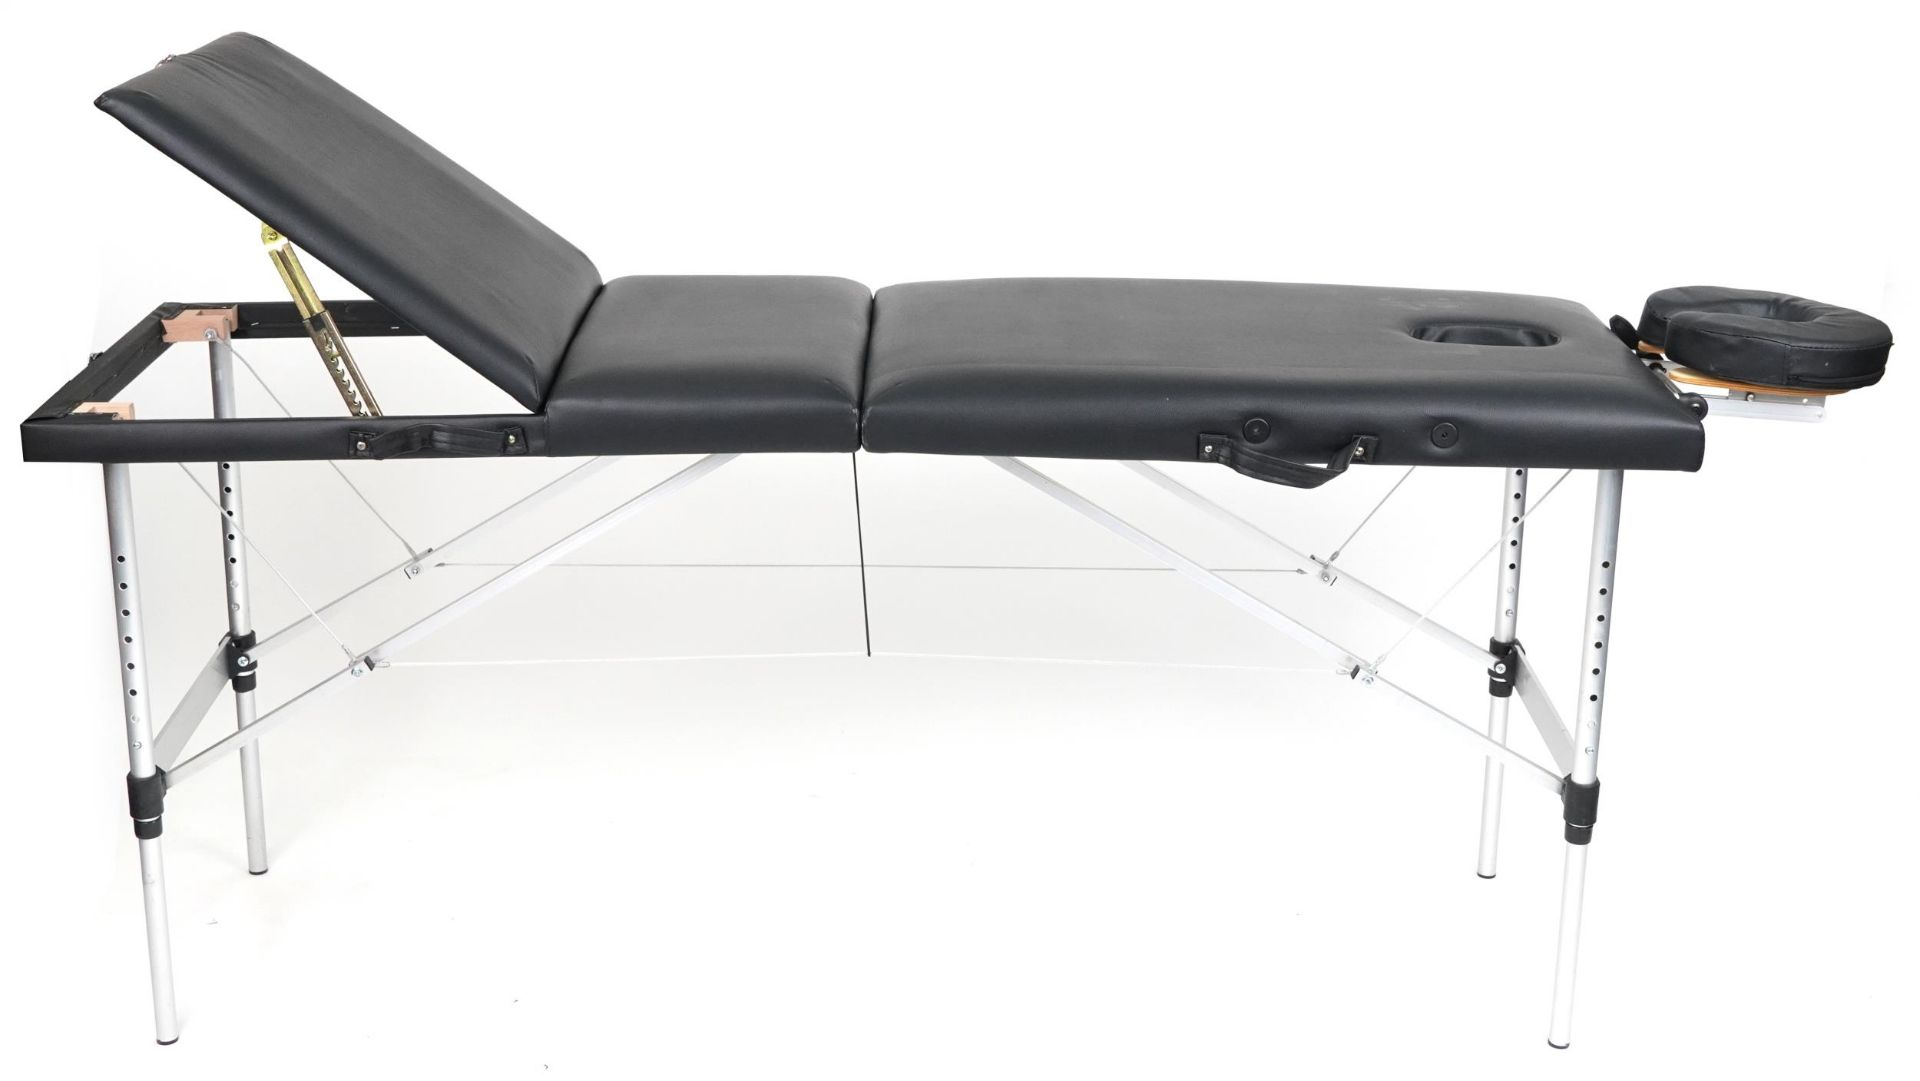 Folding aluminium and black leatherette massage table with protective bag, 83cm H x 184cm W x 59cm D - Bild 4 aus 6